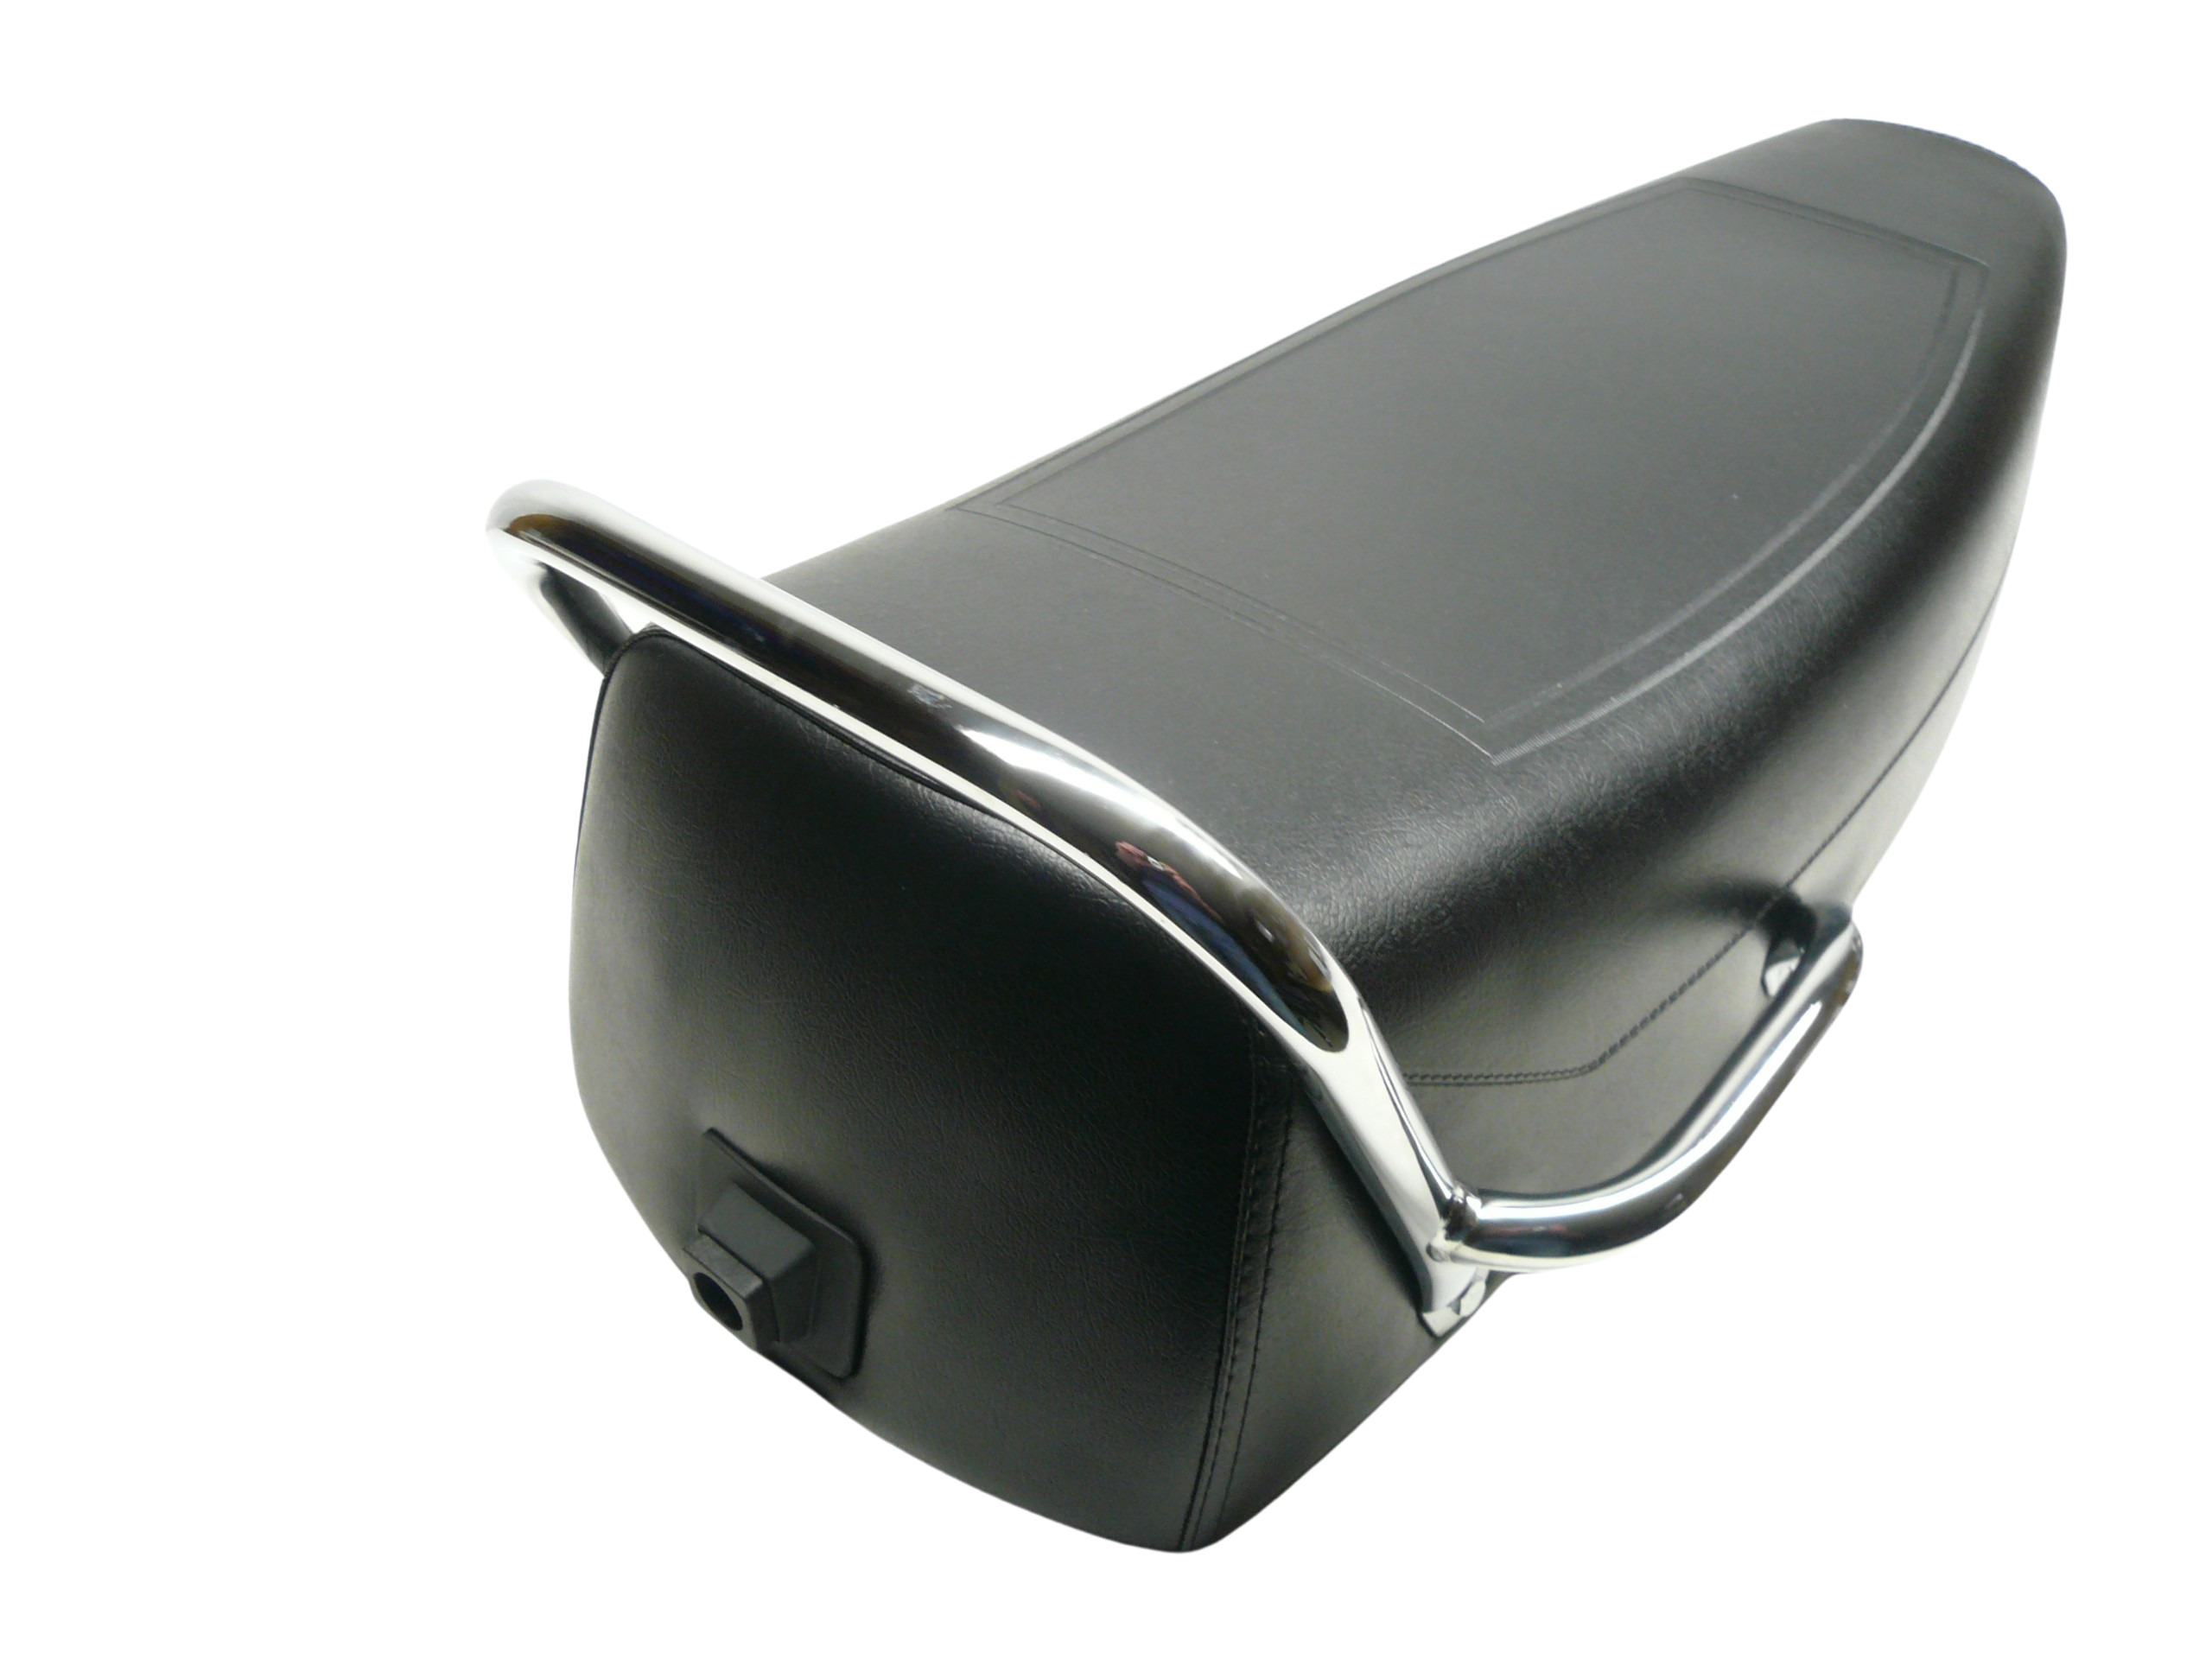 Sitzbank Vespa PX Lusso schwarz mit Haltegriff chrom